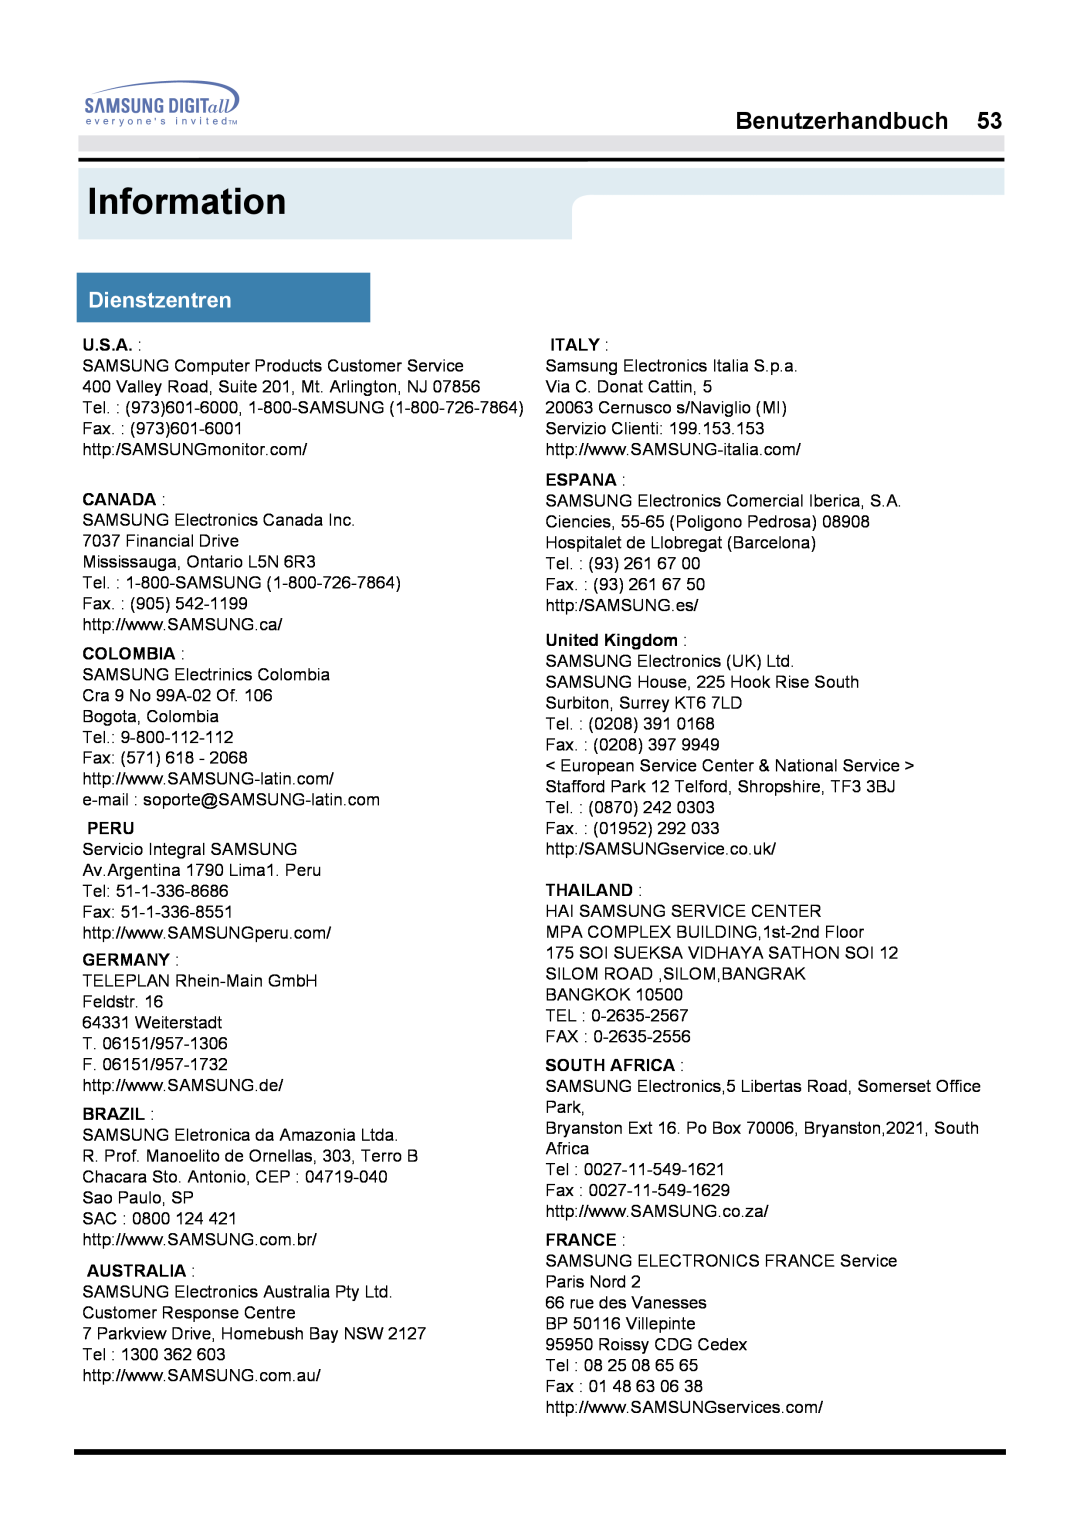 Samsung GH17LSSN Information, Dienstzentren, Benutzerhandbuch, U.S.A, Canada, Colombia, Peru, Germany, Brazil, Australia 